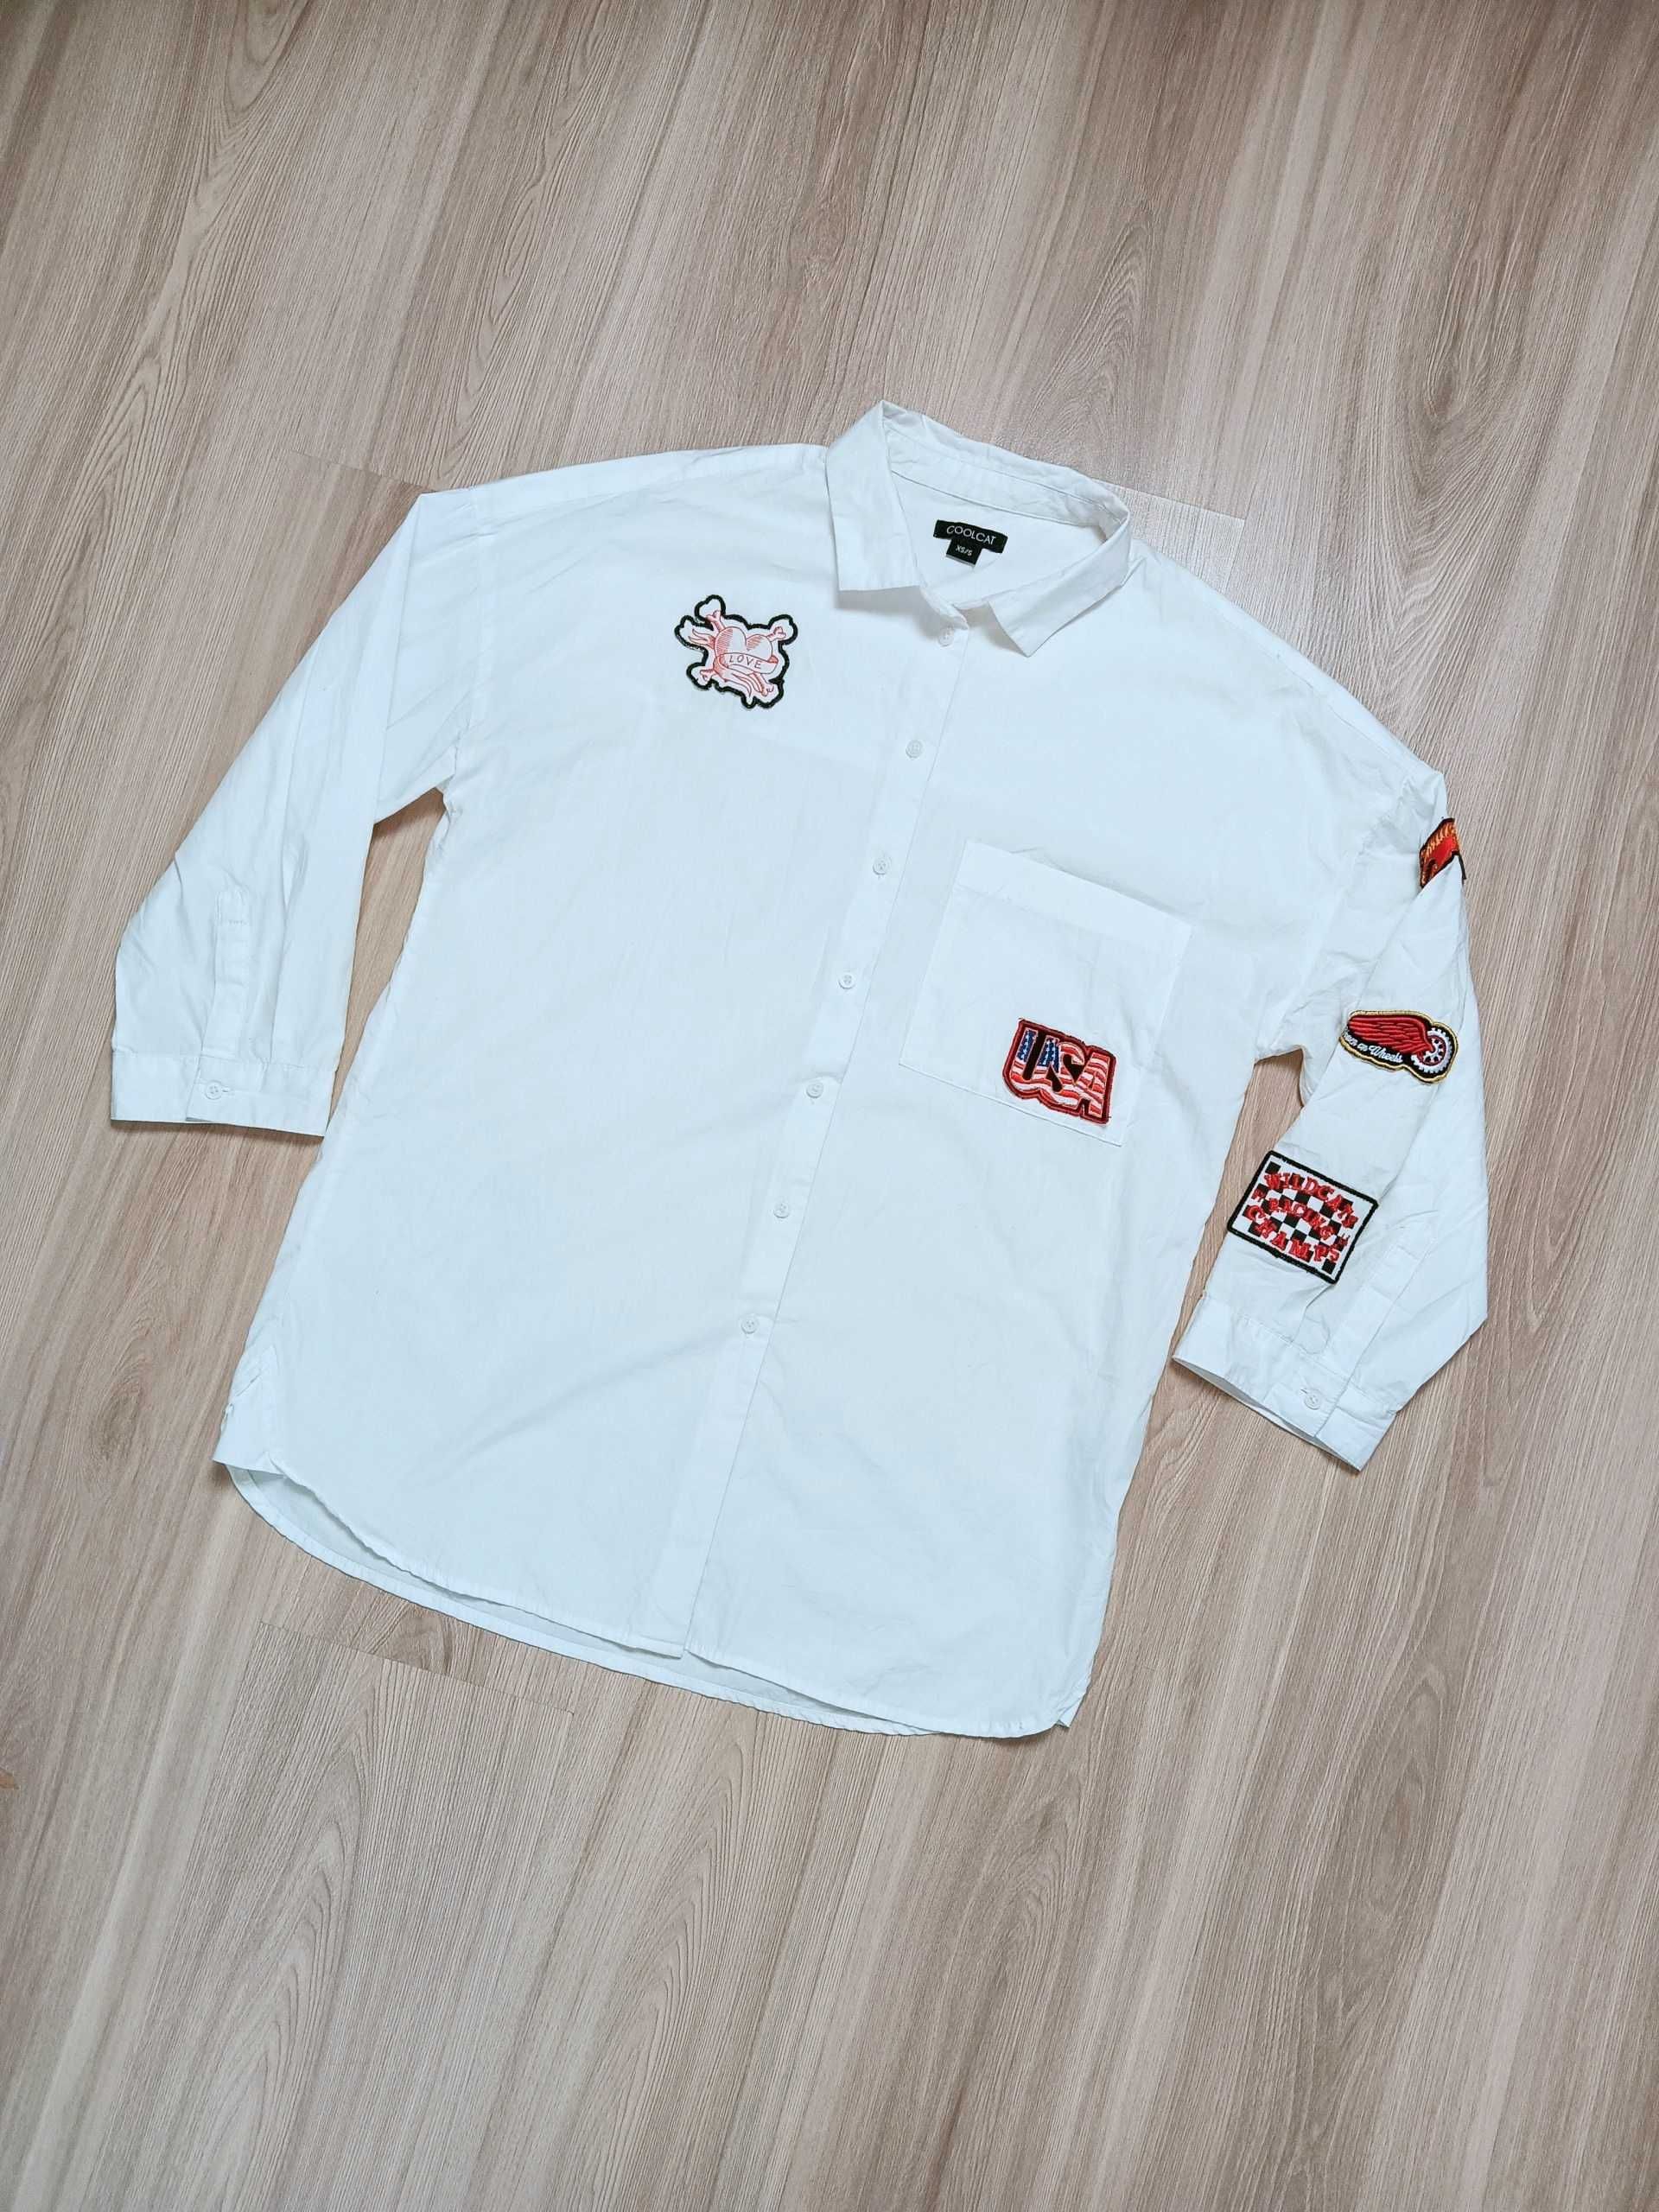 Koszula biała vintage Coolcat XS/S